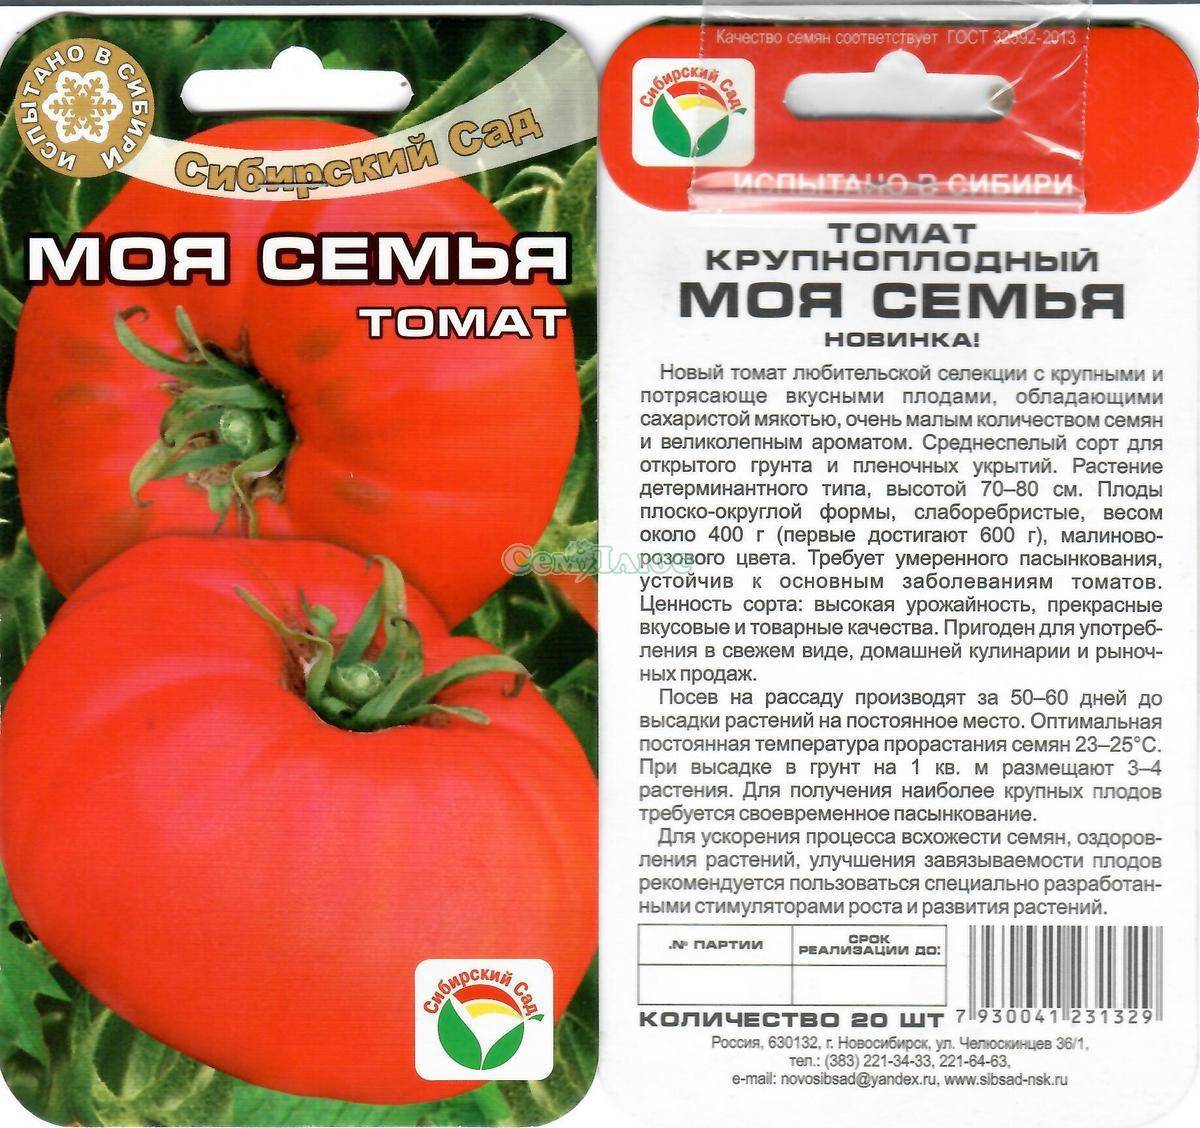 Лучшие кистевые сорта томатов для теплиц: перечень распространенных представителей